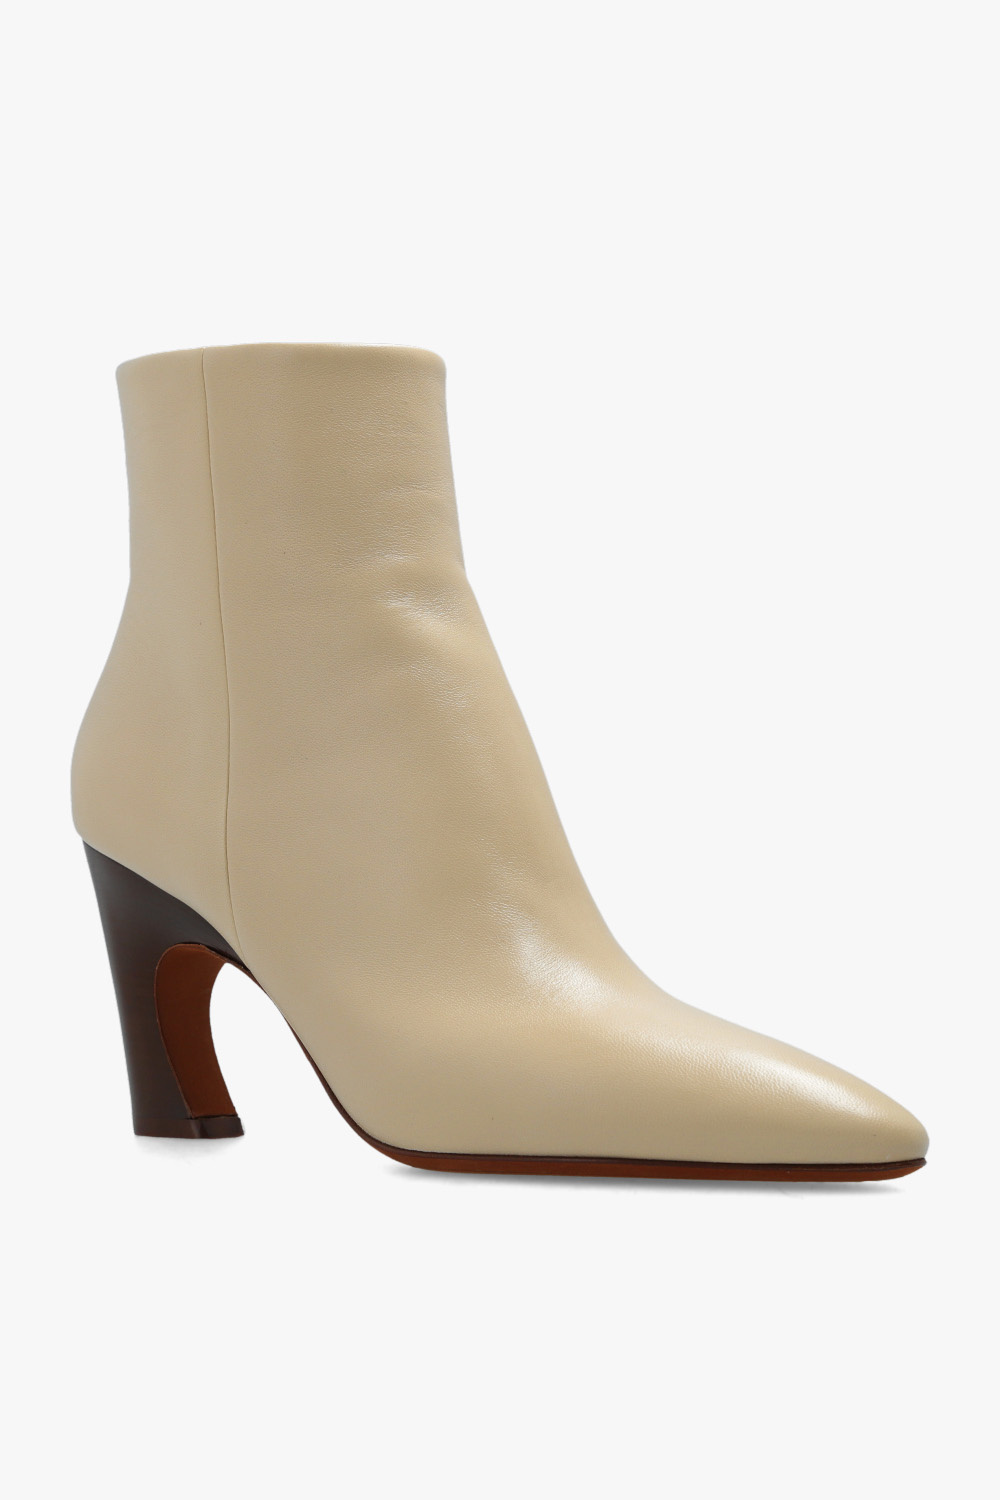 Chloé ‘Oli’ heeled ankle boots